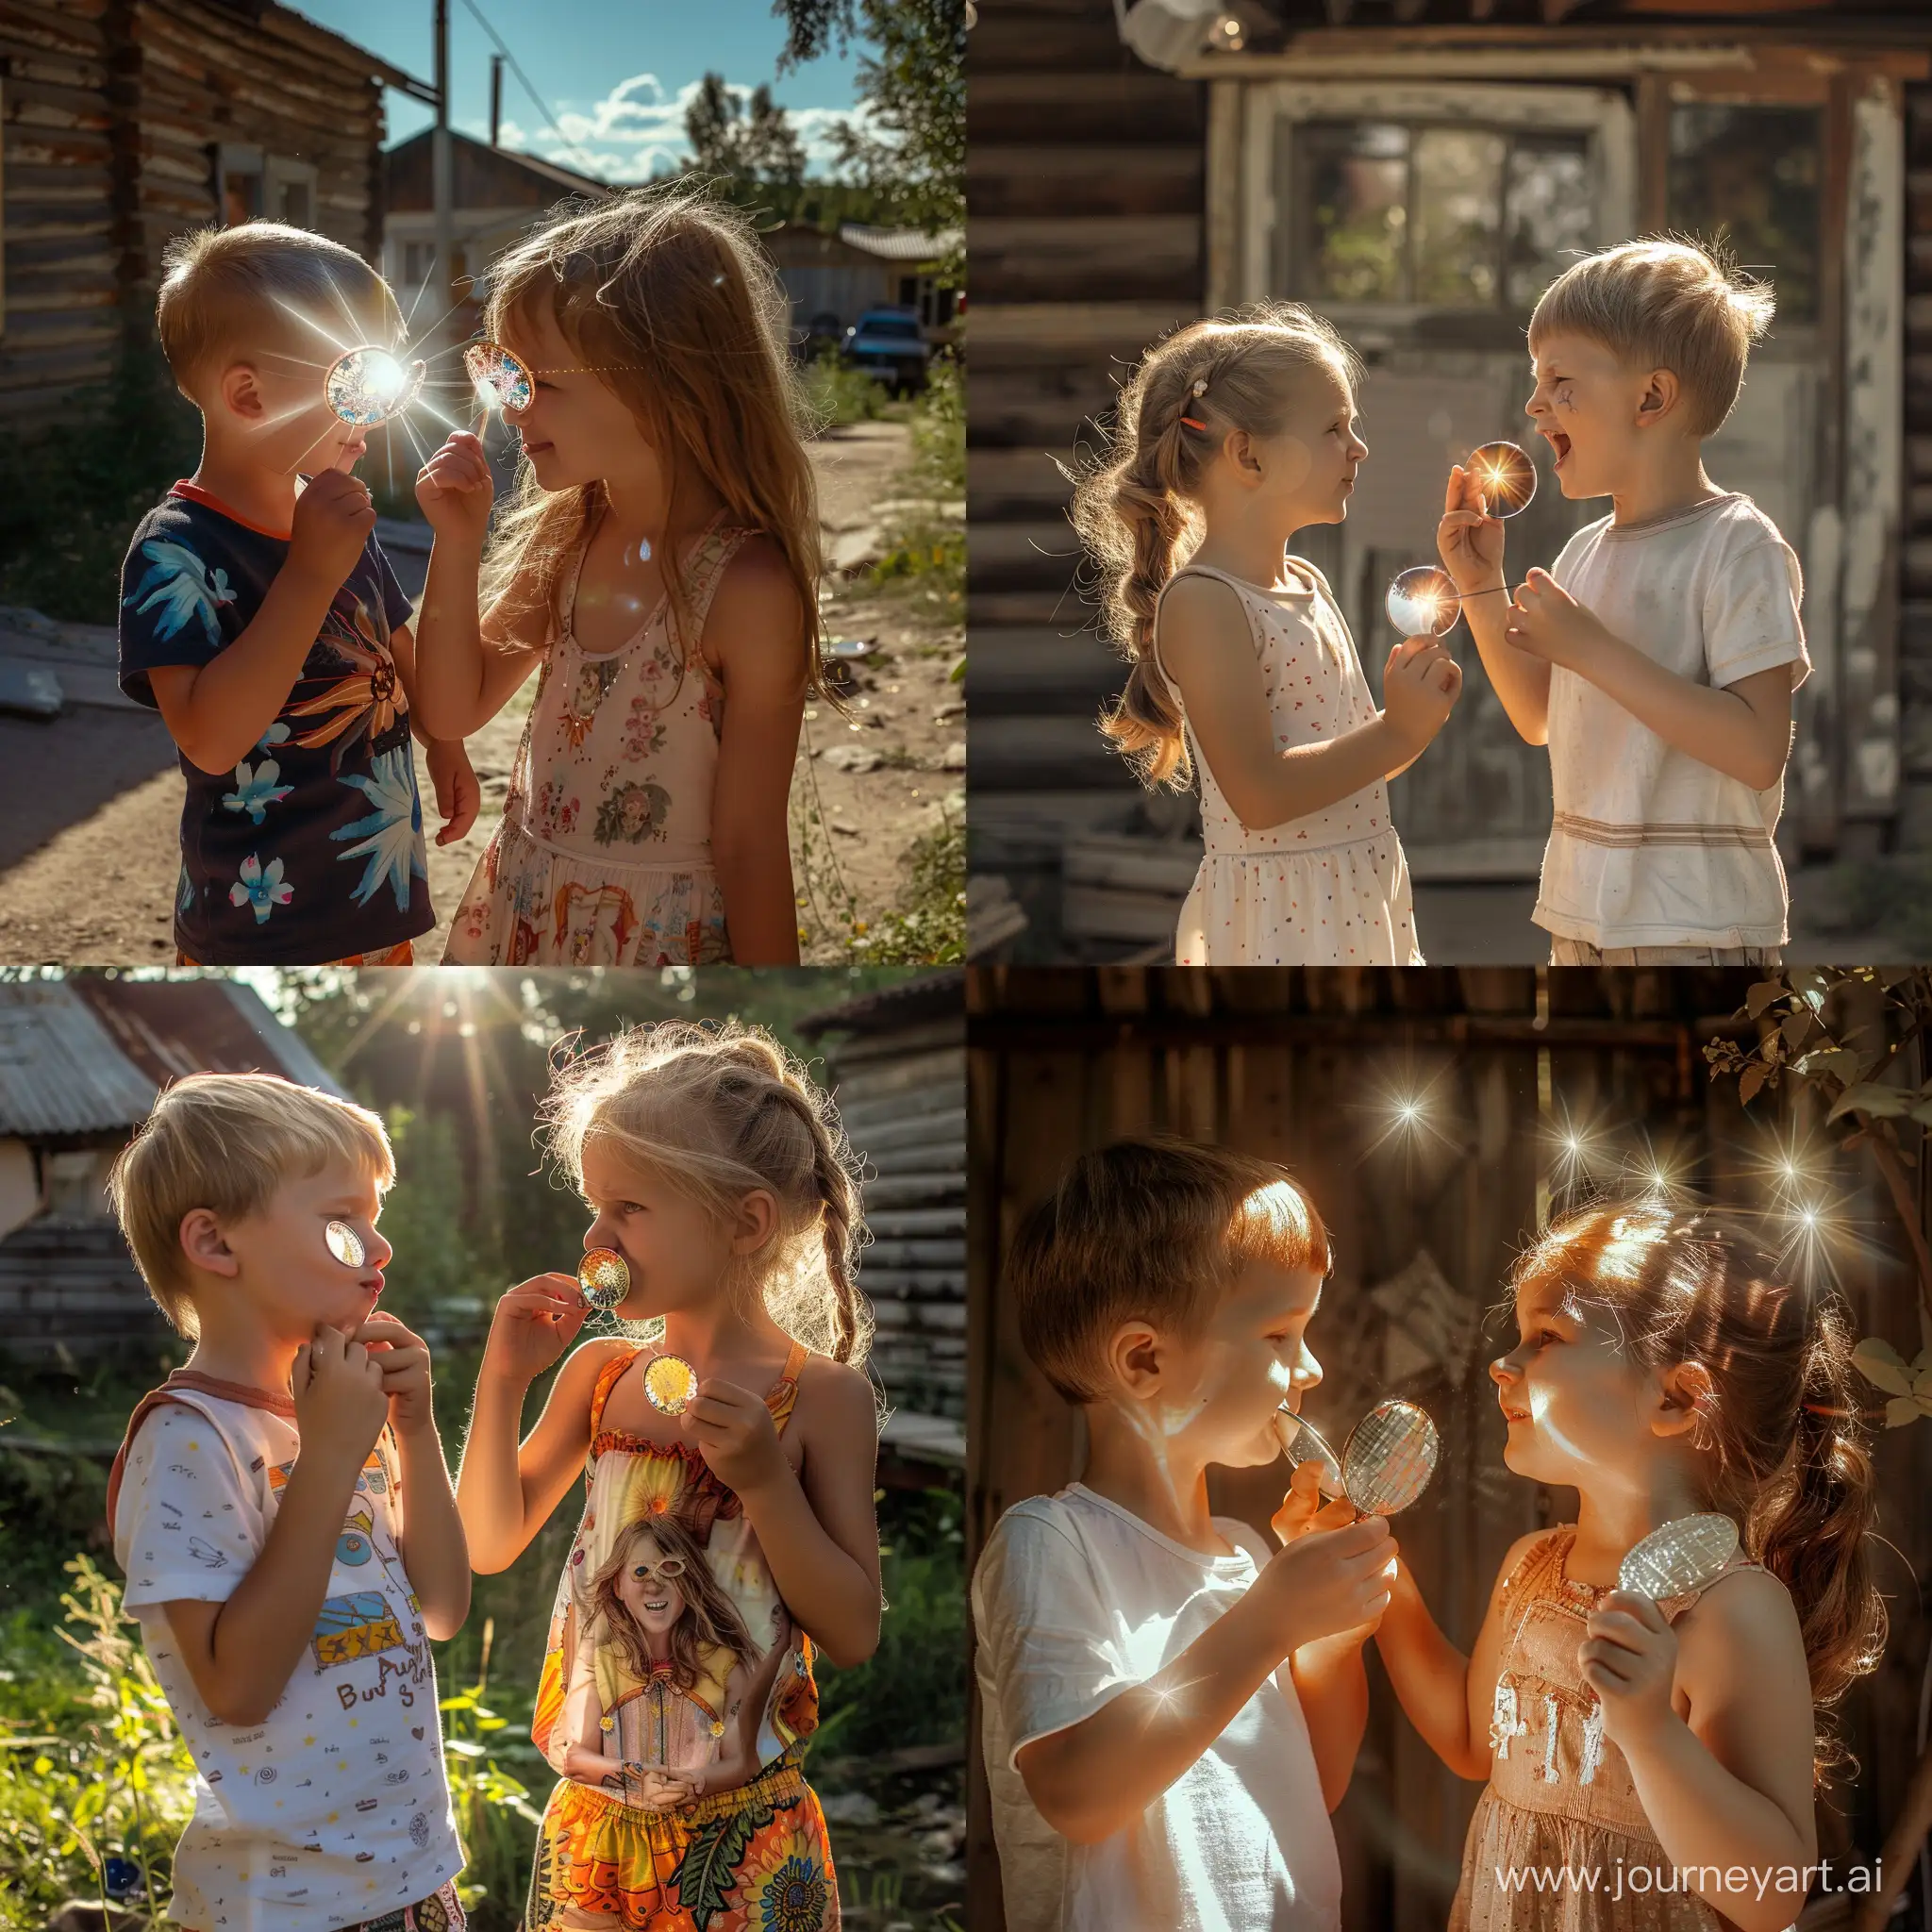 Мальчик и девочка веселятся, играют, и маленькими зеркальцами создают друг на друге солнечные блики, "солнечных зайчиков", от которых жмурятся, летний солнечный день в русской деревне, фотография, гиперреализм, высокое разрешение